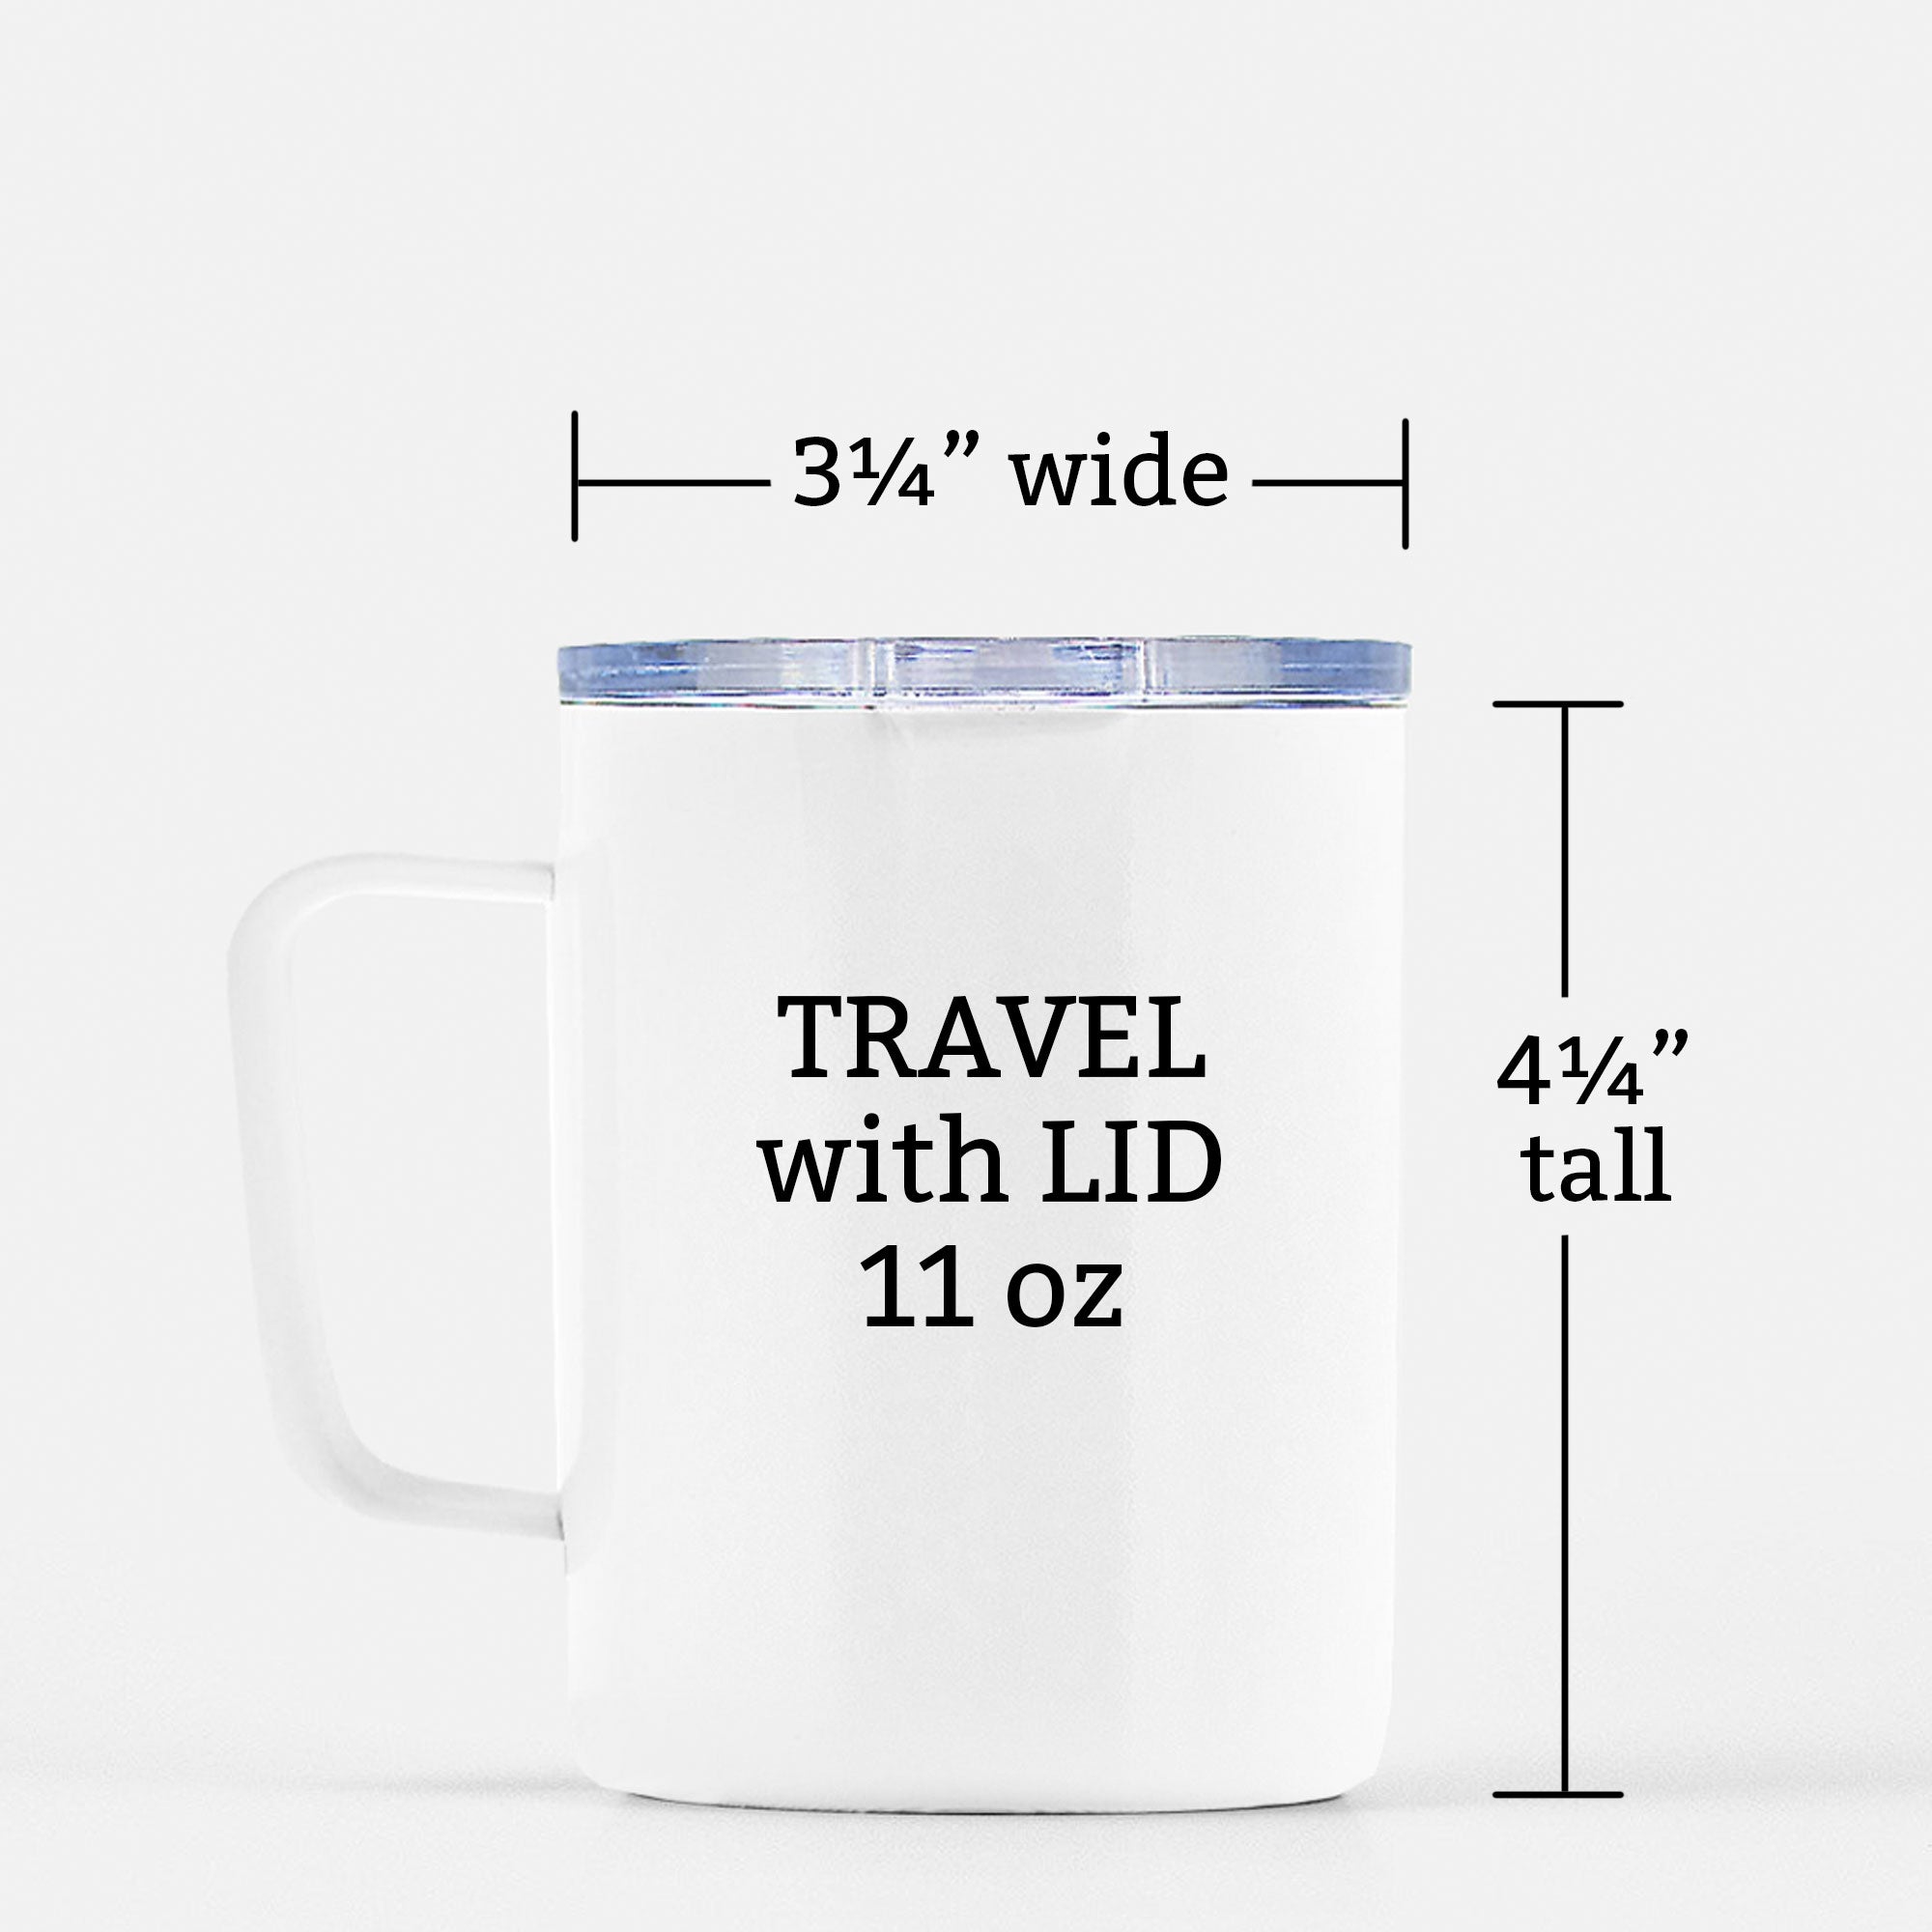 Camelbak Travel Mug – Basecamp Coffee Co.